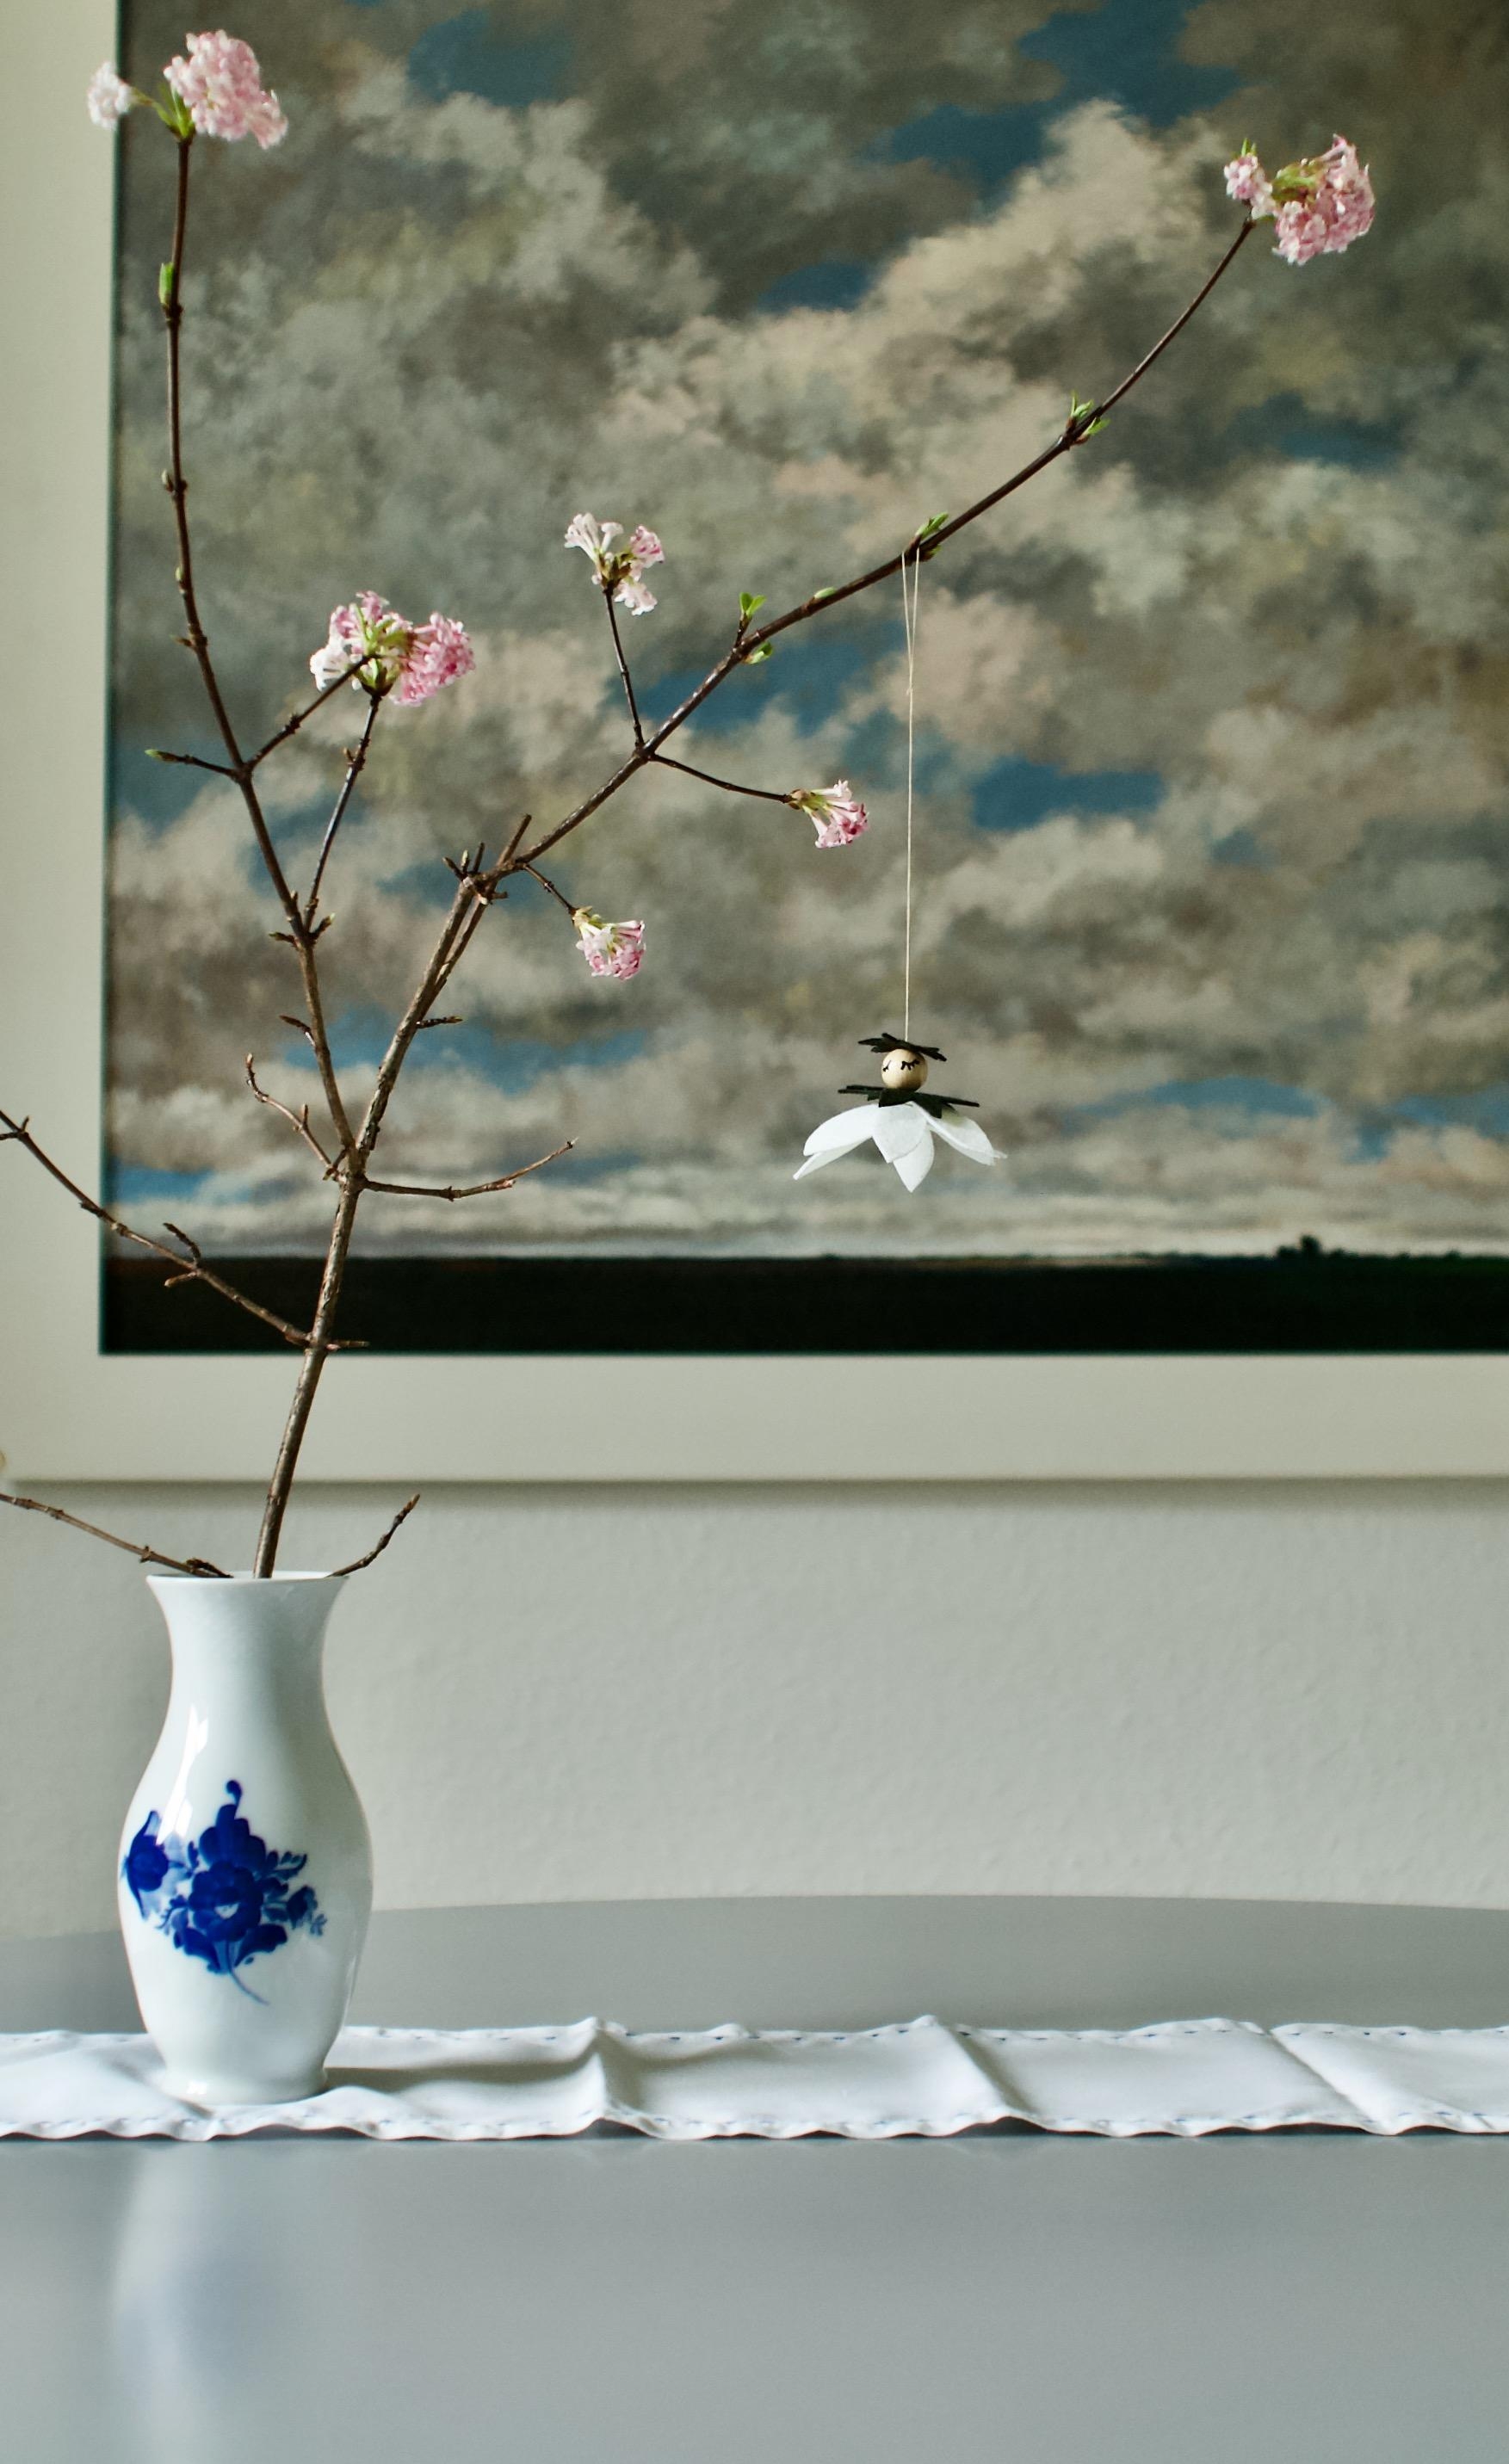 #vasenmittwoch
mit Blütenzweig und Schneeglöckchen aus Filz 